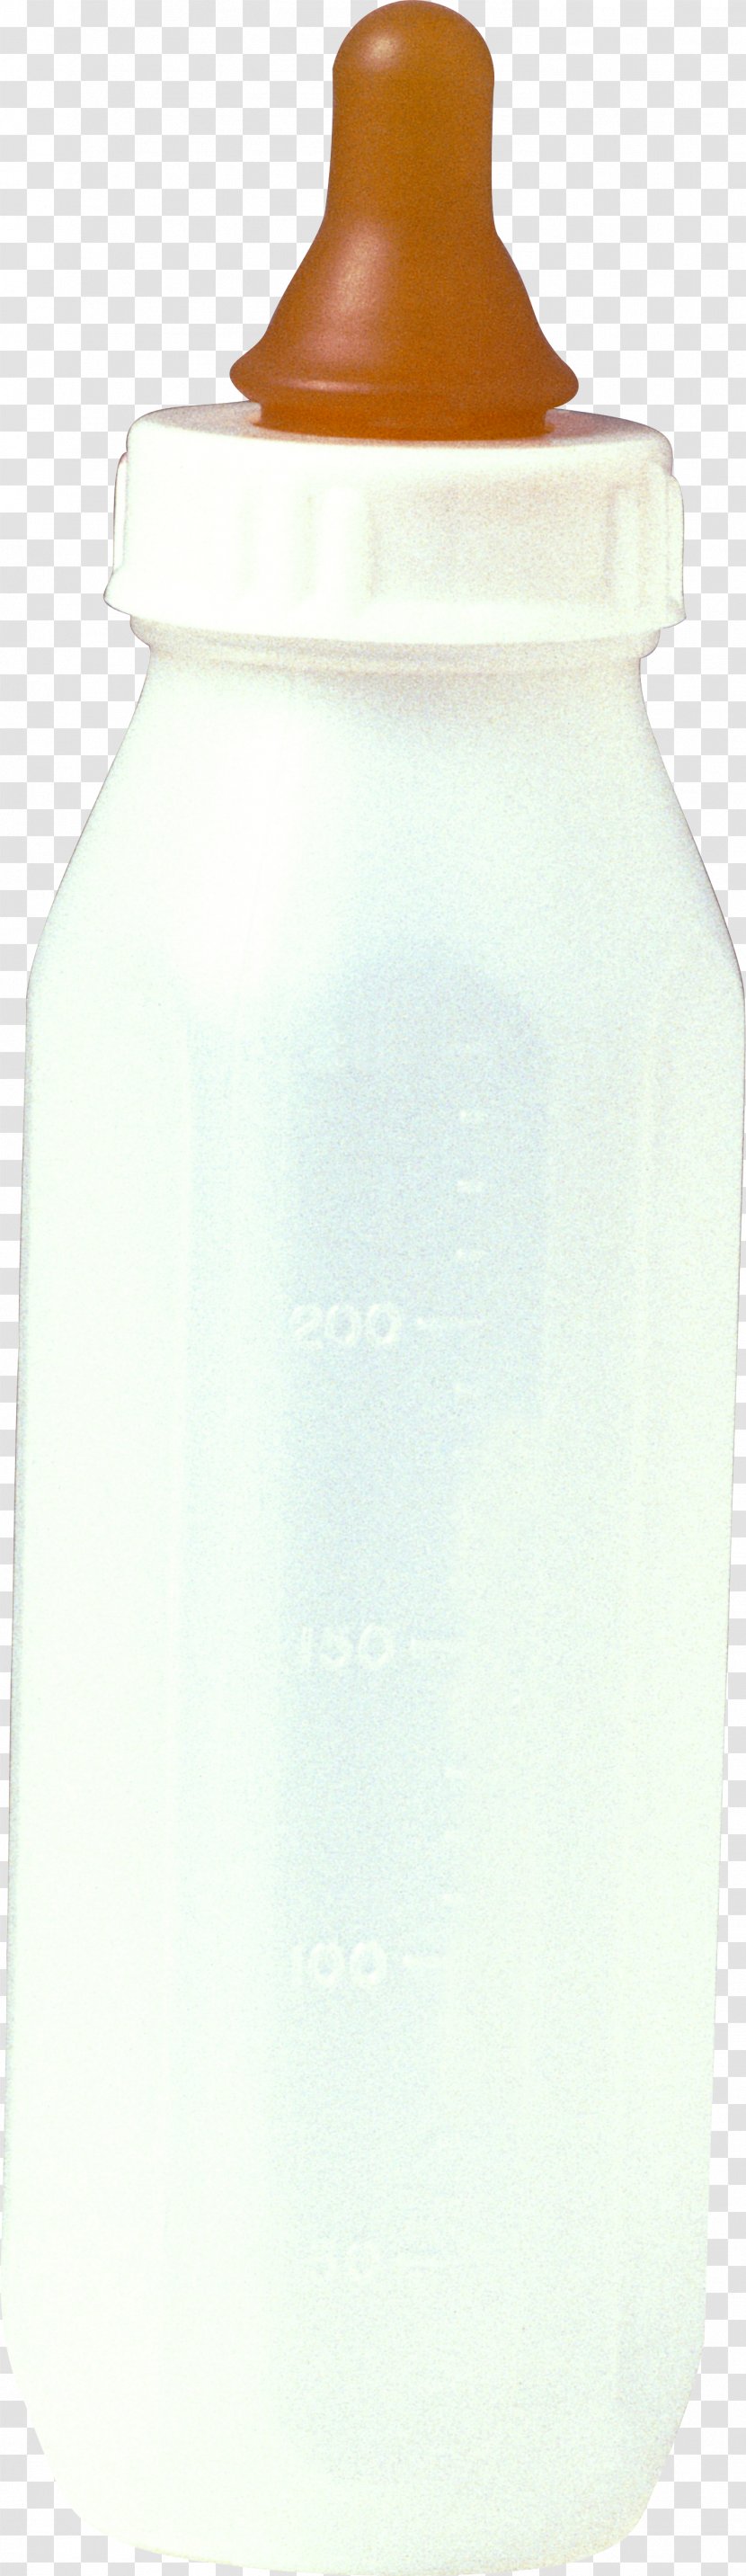 Water Bottles Lid - Bottle - Polyester Transparent PNG